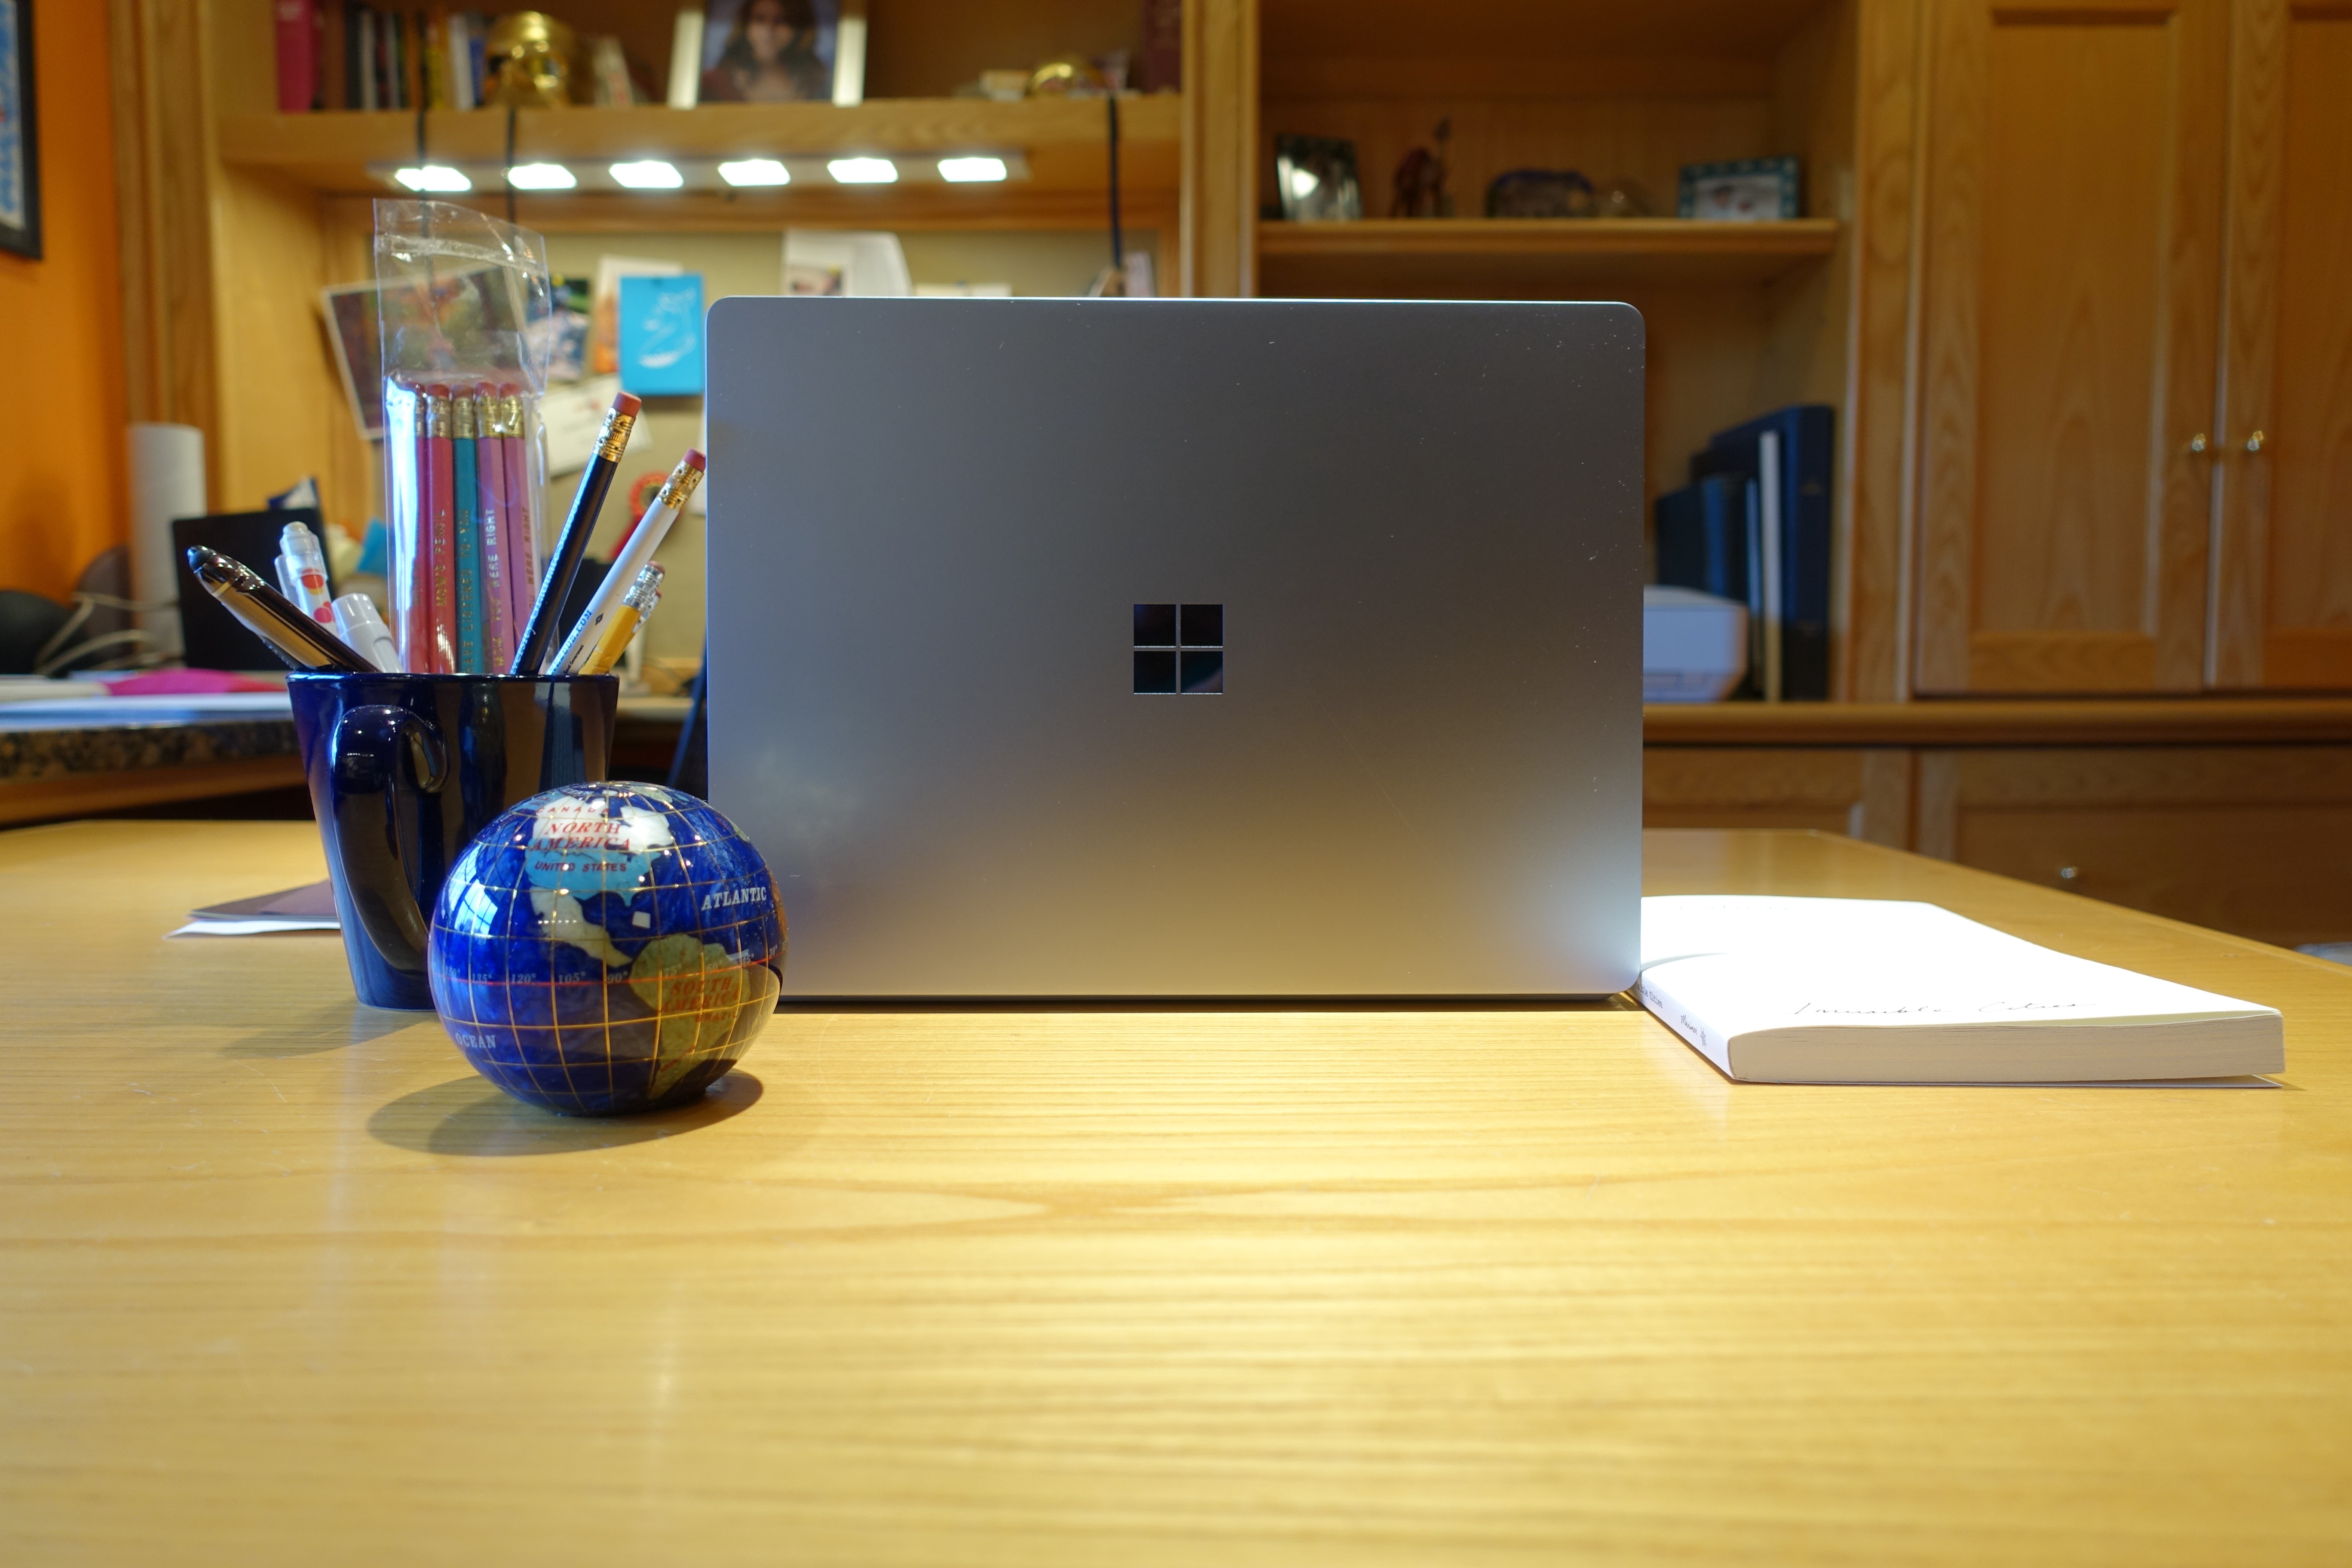 世界どこでも無料発送 Surface Go Laptop ノートPC